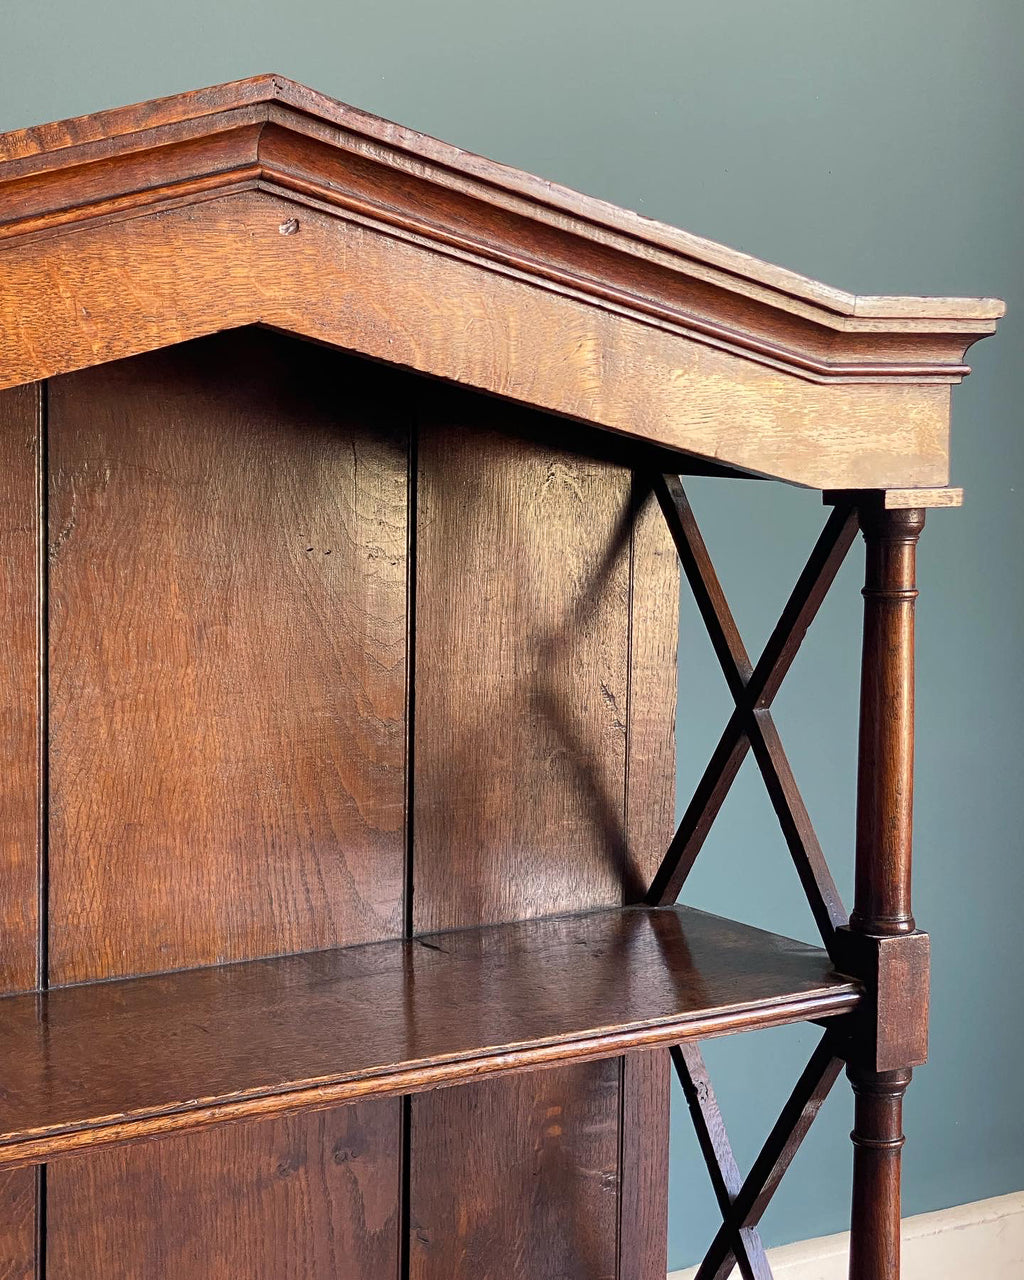 19th Century Oak Bookcase